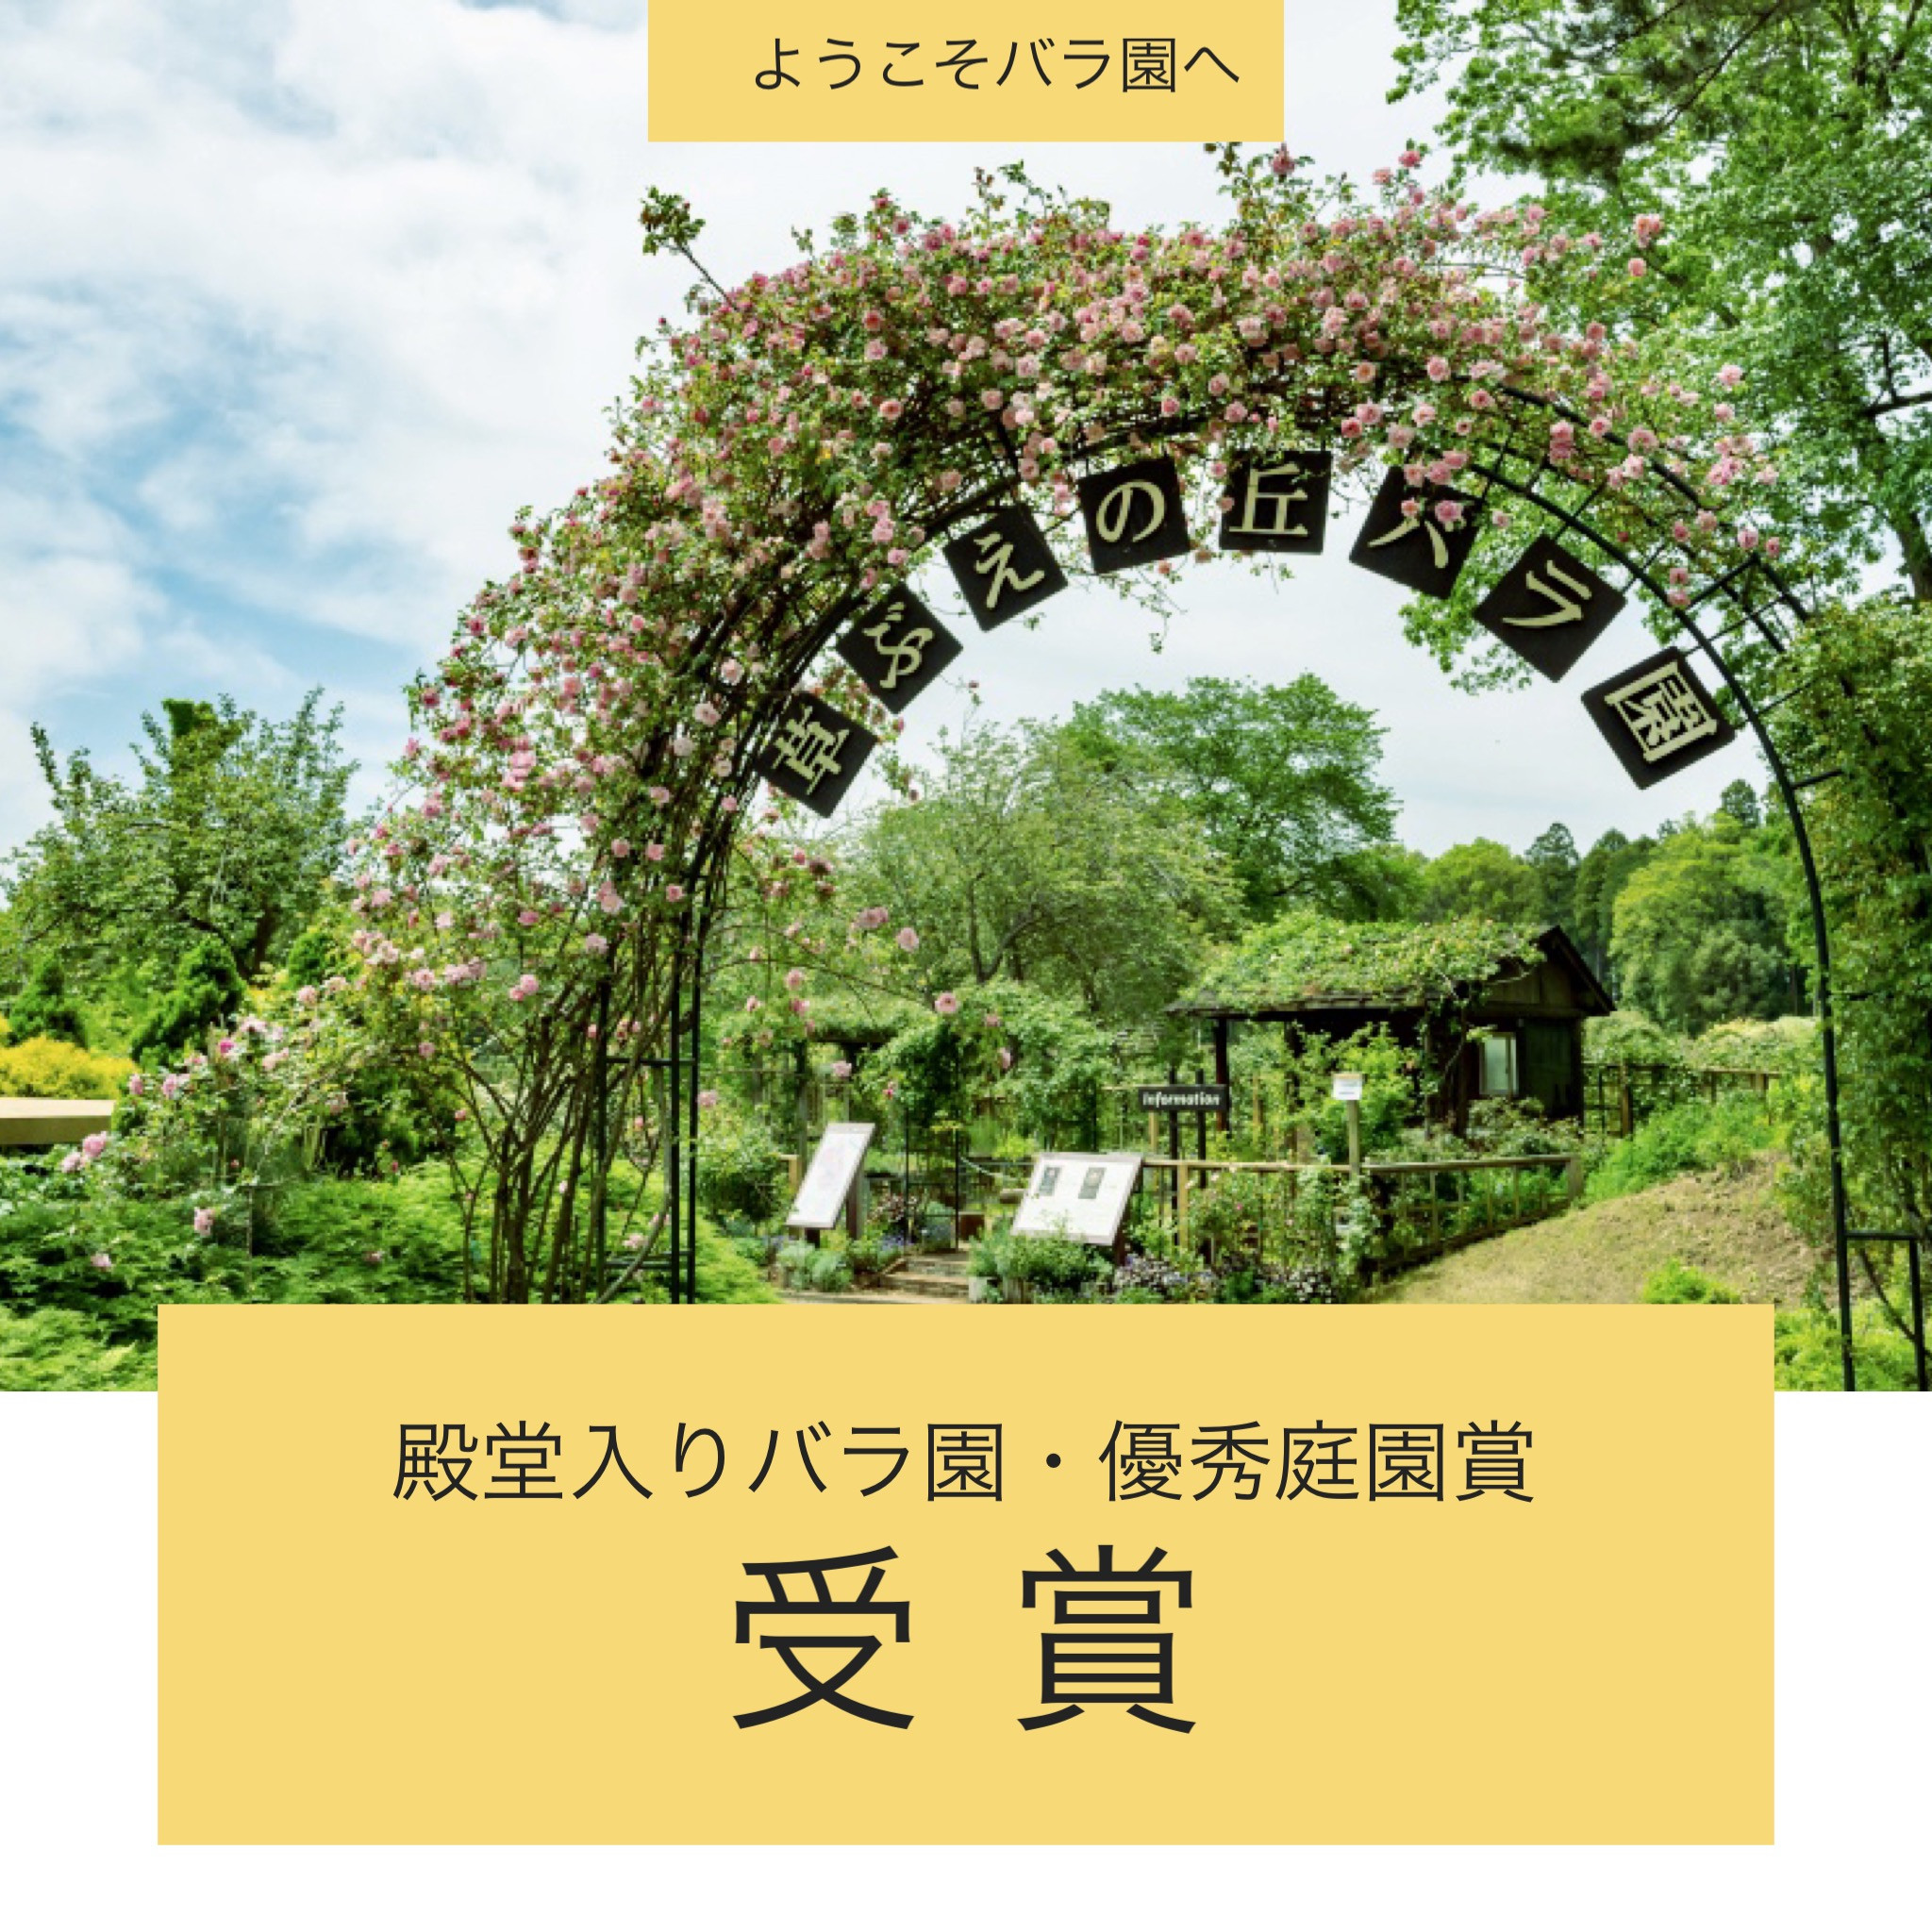 佐倉草ぶえの丘バラ園公式サイト ヘリテージローズが咲くバラ園